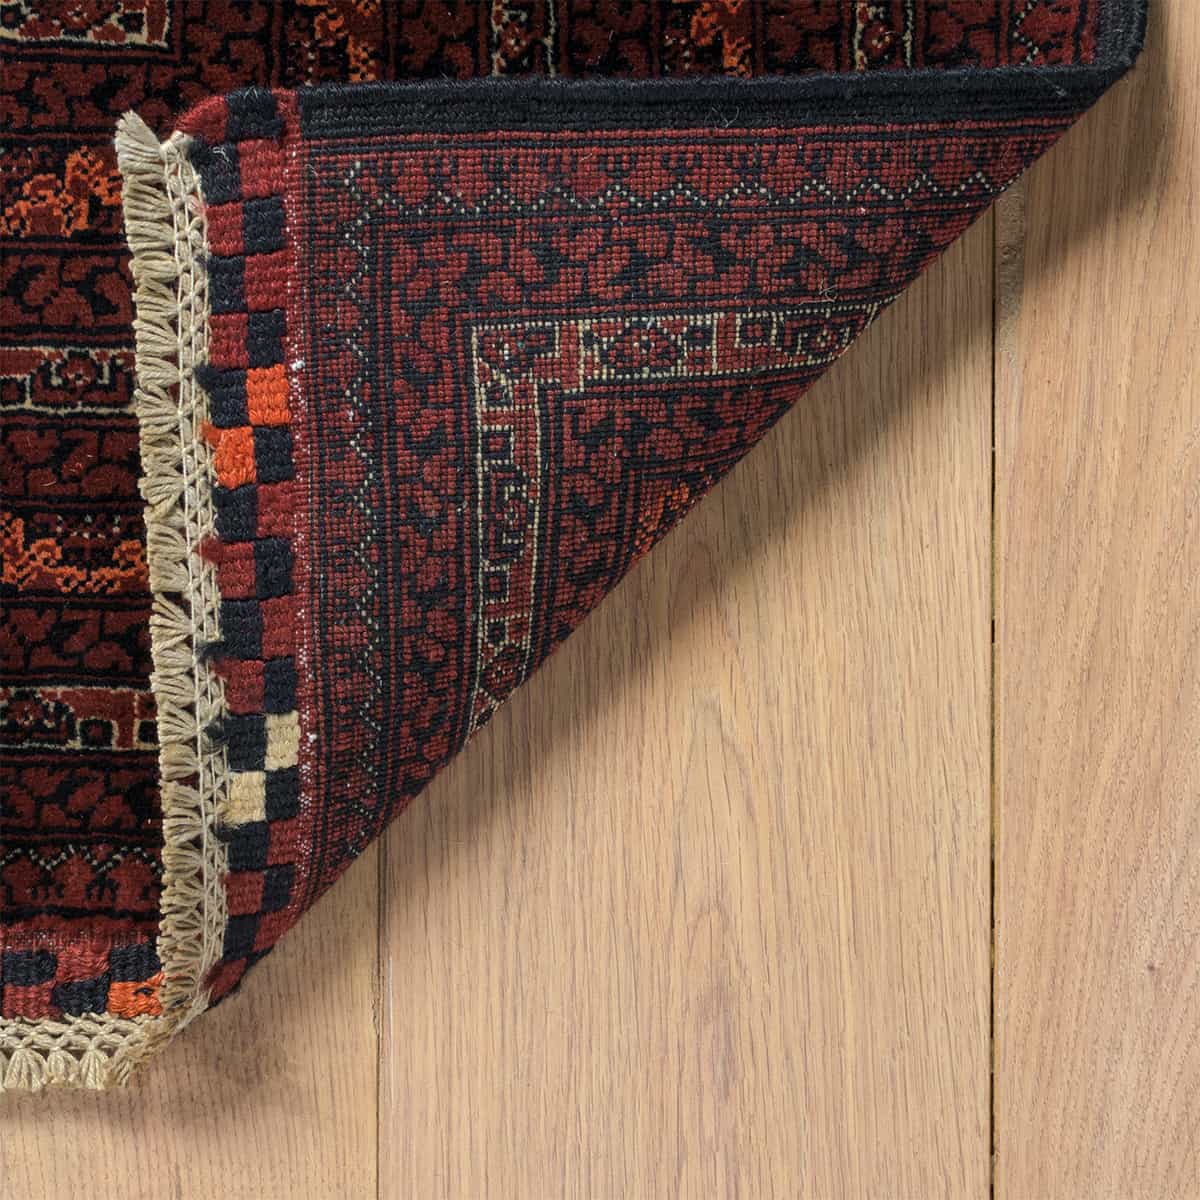  אפגני באשיר 00 אדום 197x286 | השטיח האדום 